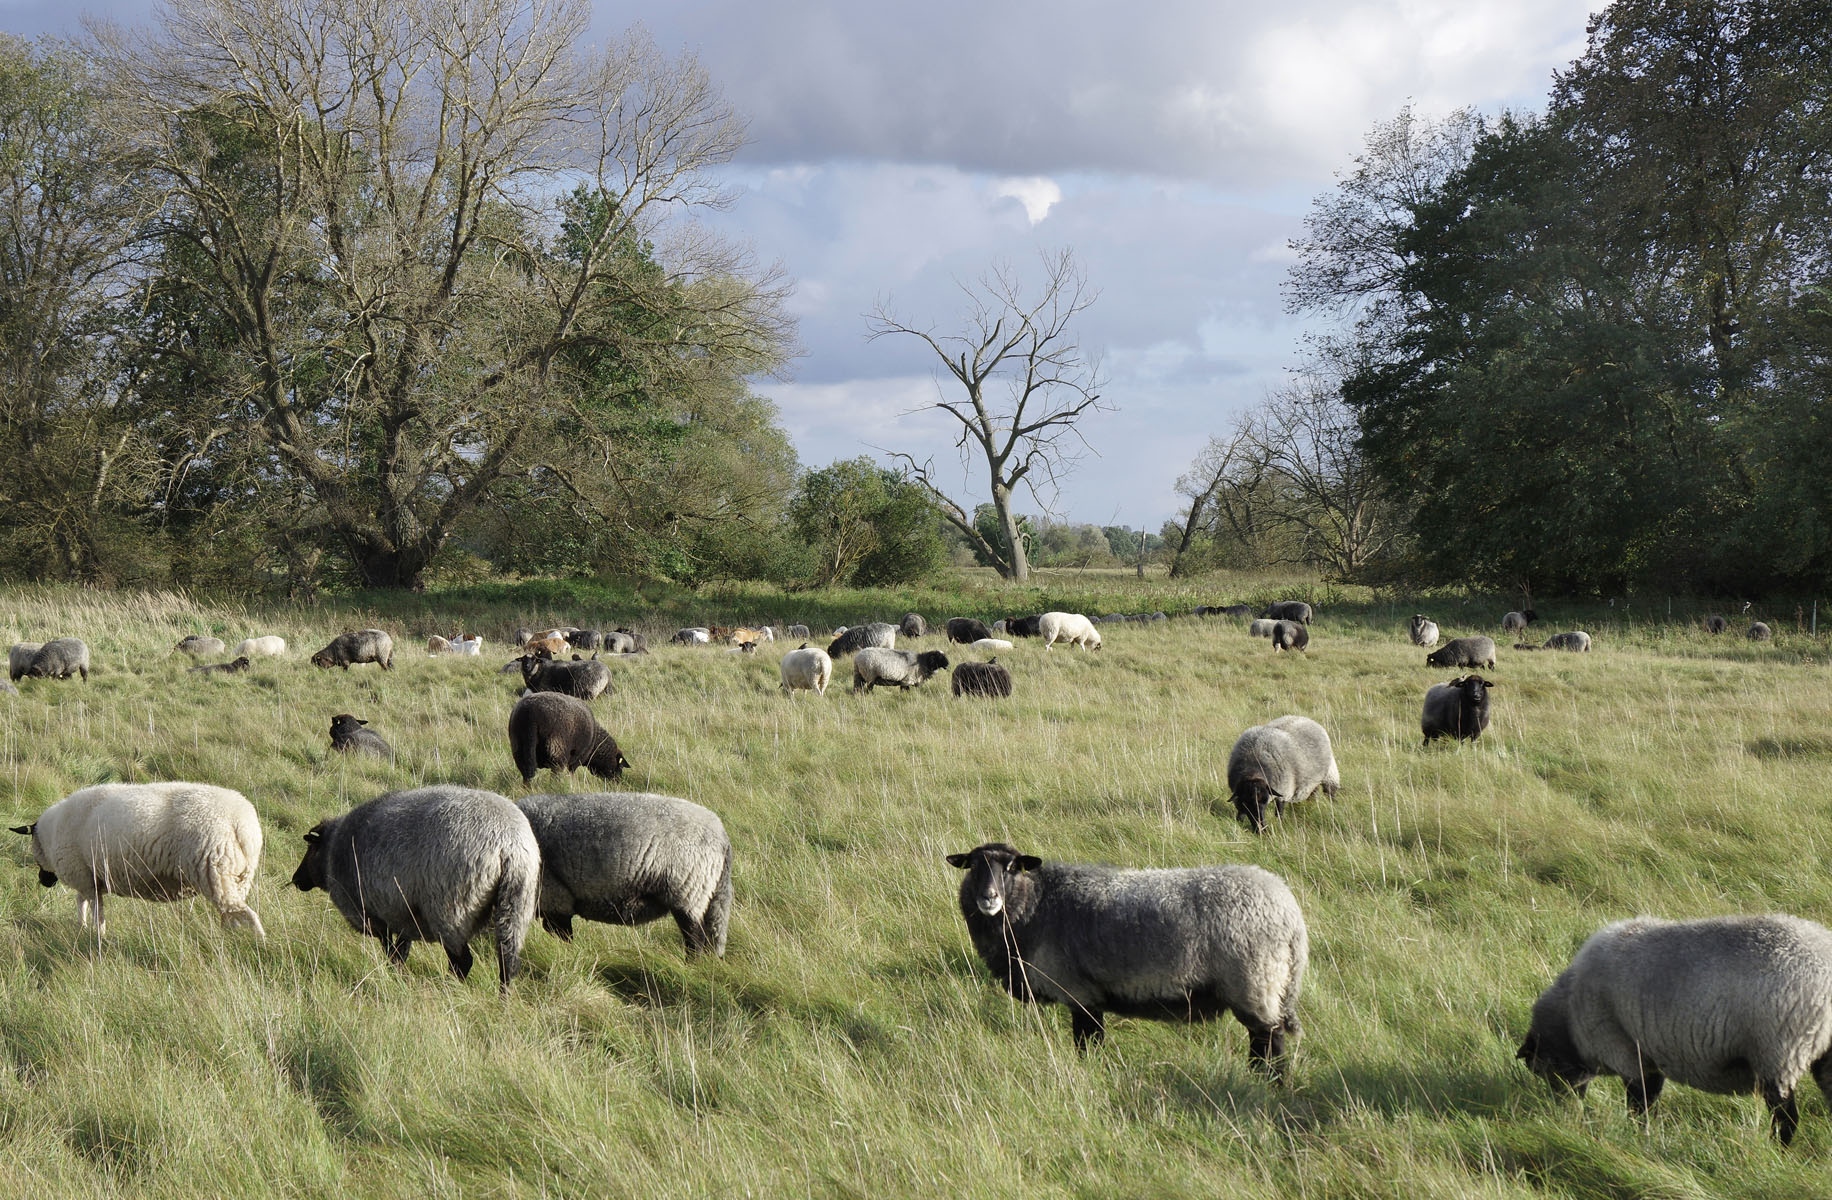 Eine Herde von Schafen weidet im Deichvorland der Oderaue. Es ist Herbst. Im Hintergrund sind Auengehölze - teils belaubt, teils abgestorben - sichtbar.